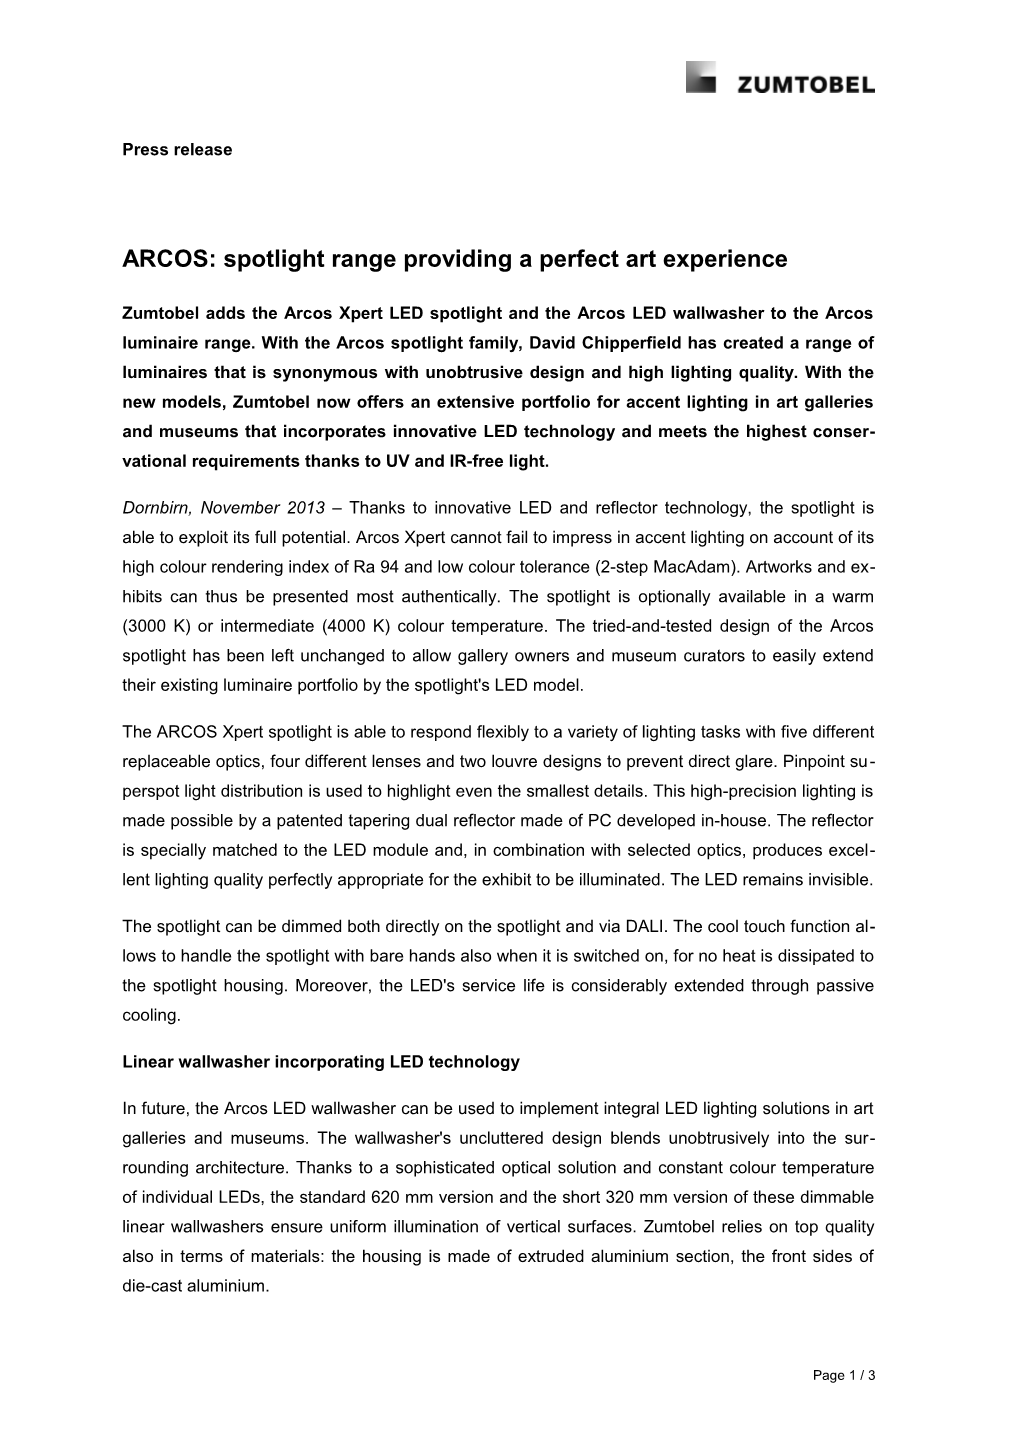 ARCOS: Spotlight Range Providing a Perfect Art Experience